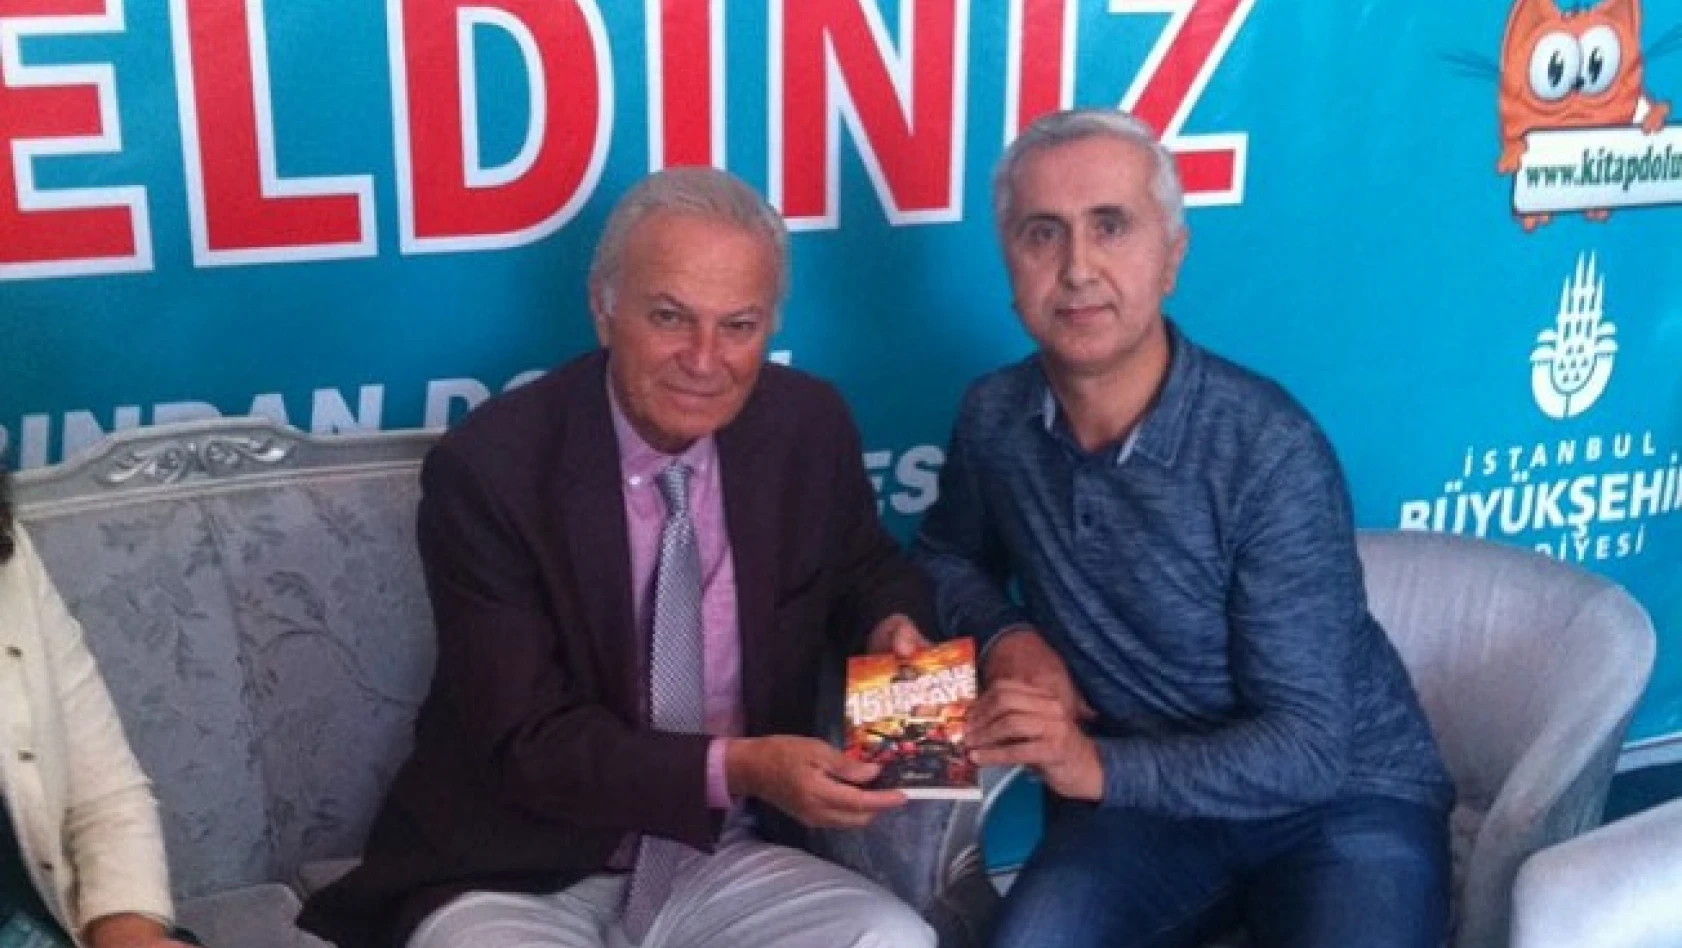 Yazar Karagöz, Ediz Hun'a kitap imzaladı